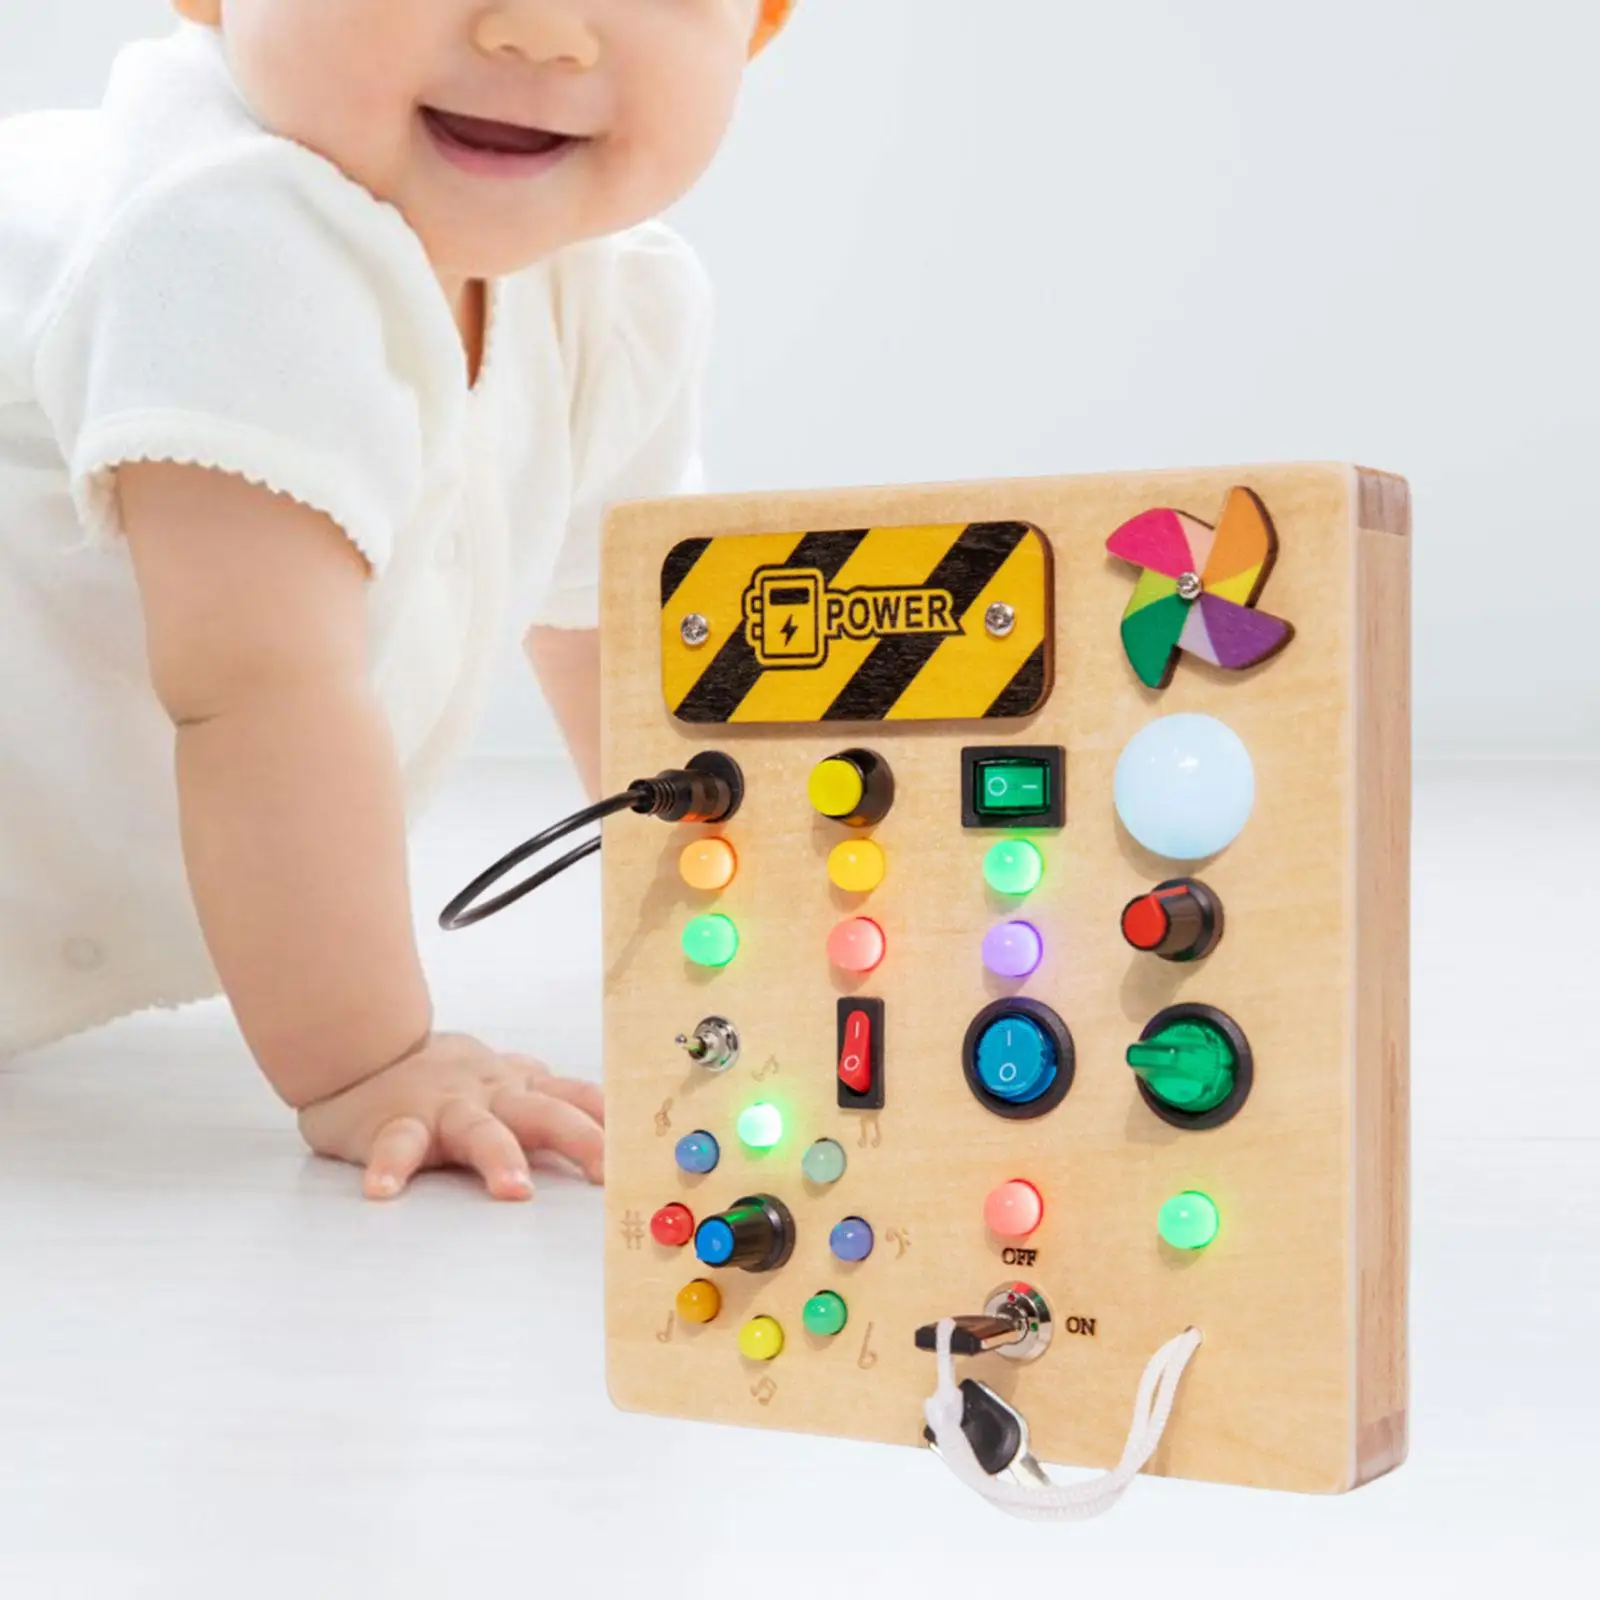 

Переключатель света занятая доска игрушки с кнопками искусственная Базовая моторика для детей мальчиков девочек малышей лучшие подарки